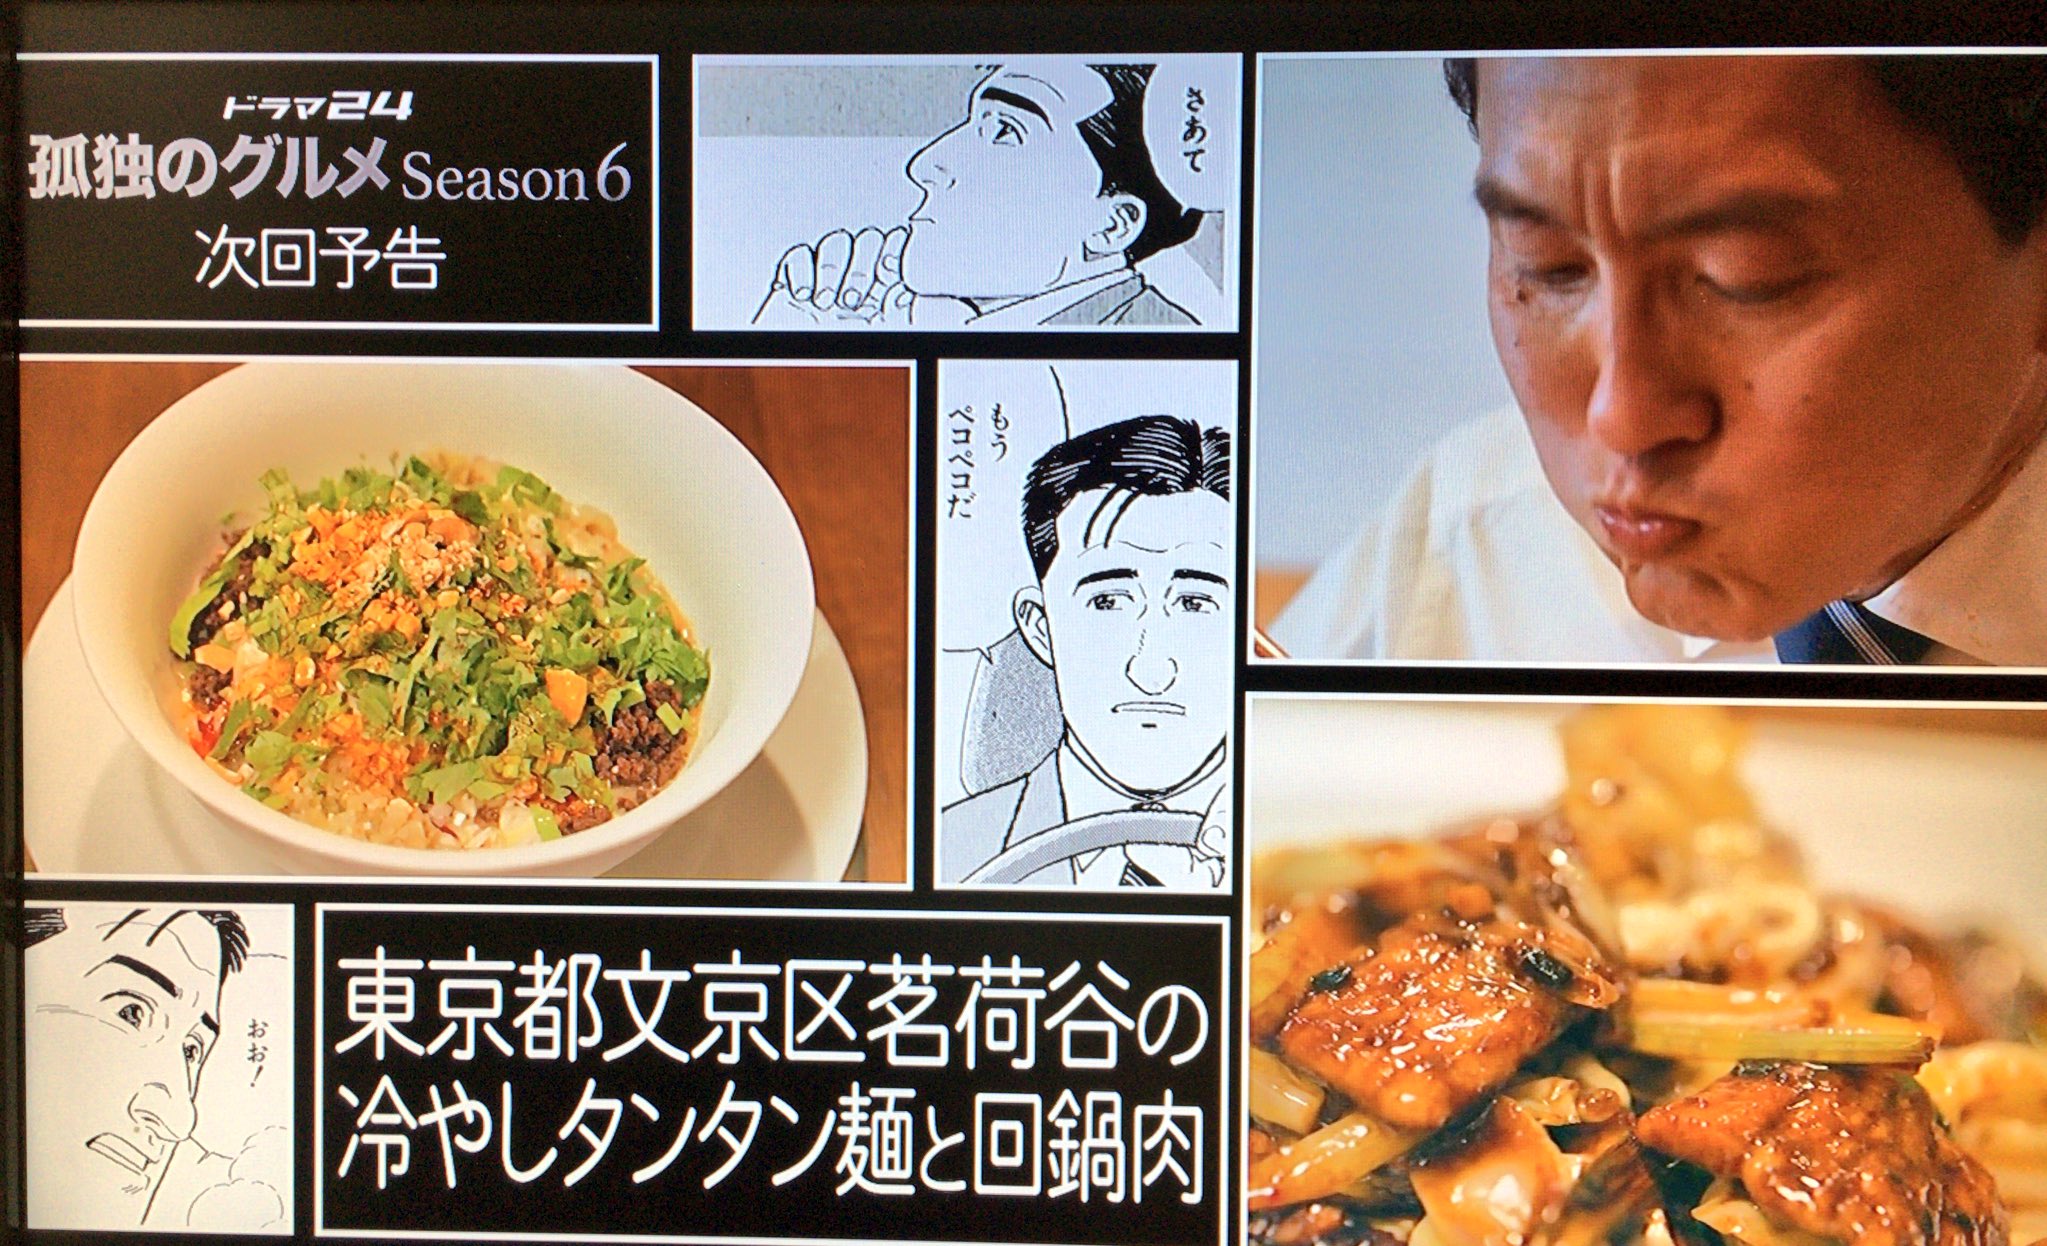 孤独のグルメ情報 非公式アカウント Season6 11 来週のタイトルは 東京都文京区茗荷谷の冷やしタンタン麺と回鍋肉 です 今から楽しみですね W 孤独のグルメ T Co Fumfzxpc8n Twitter